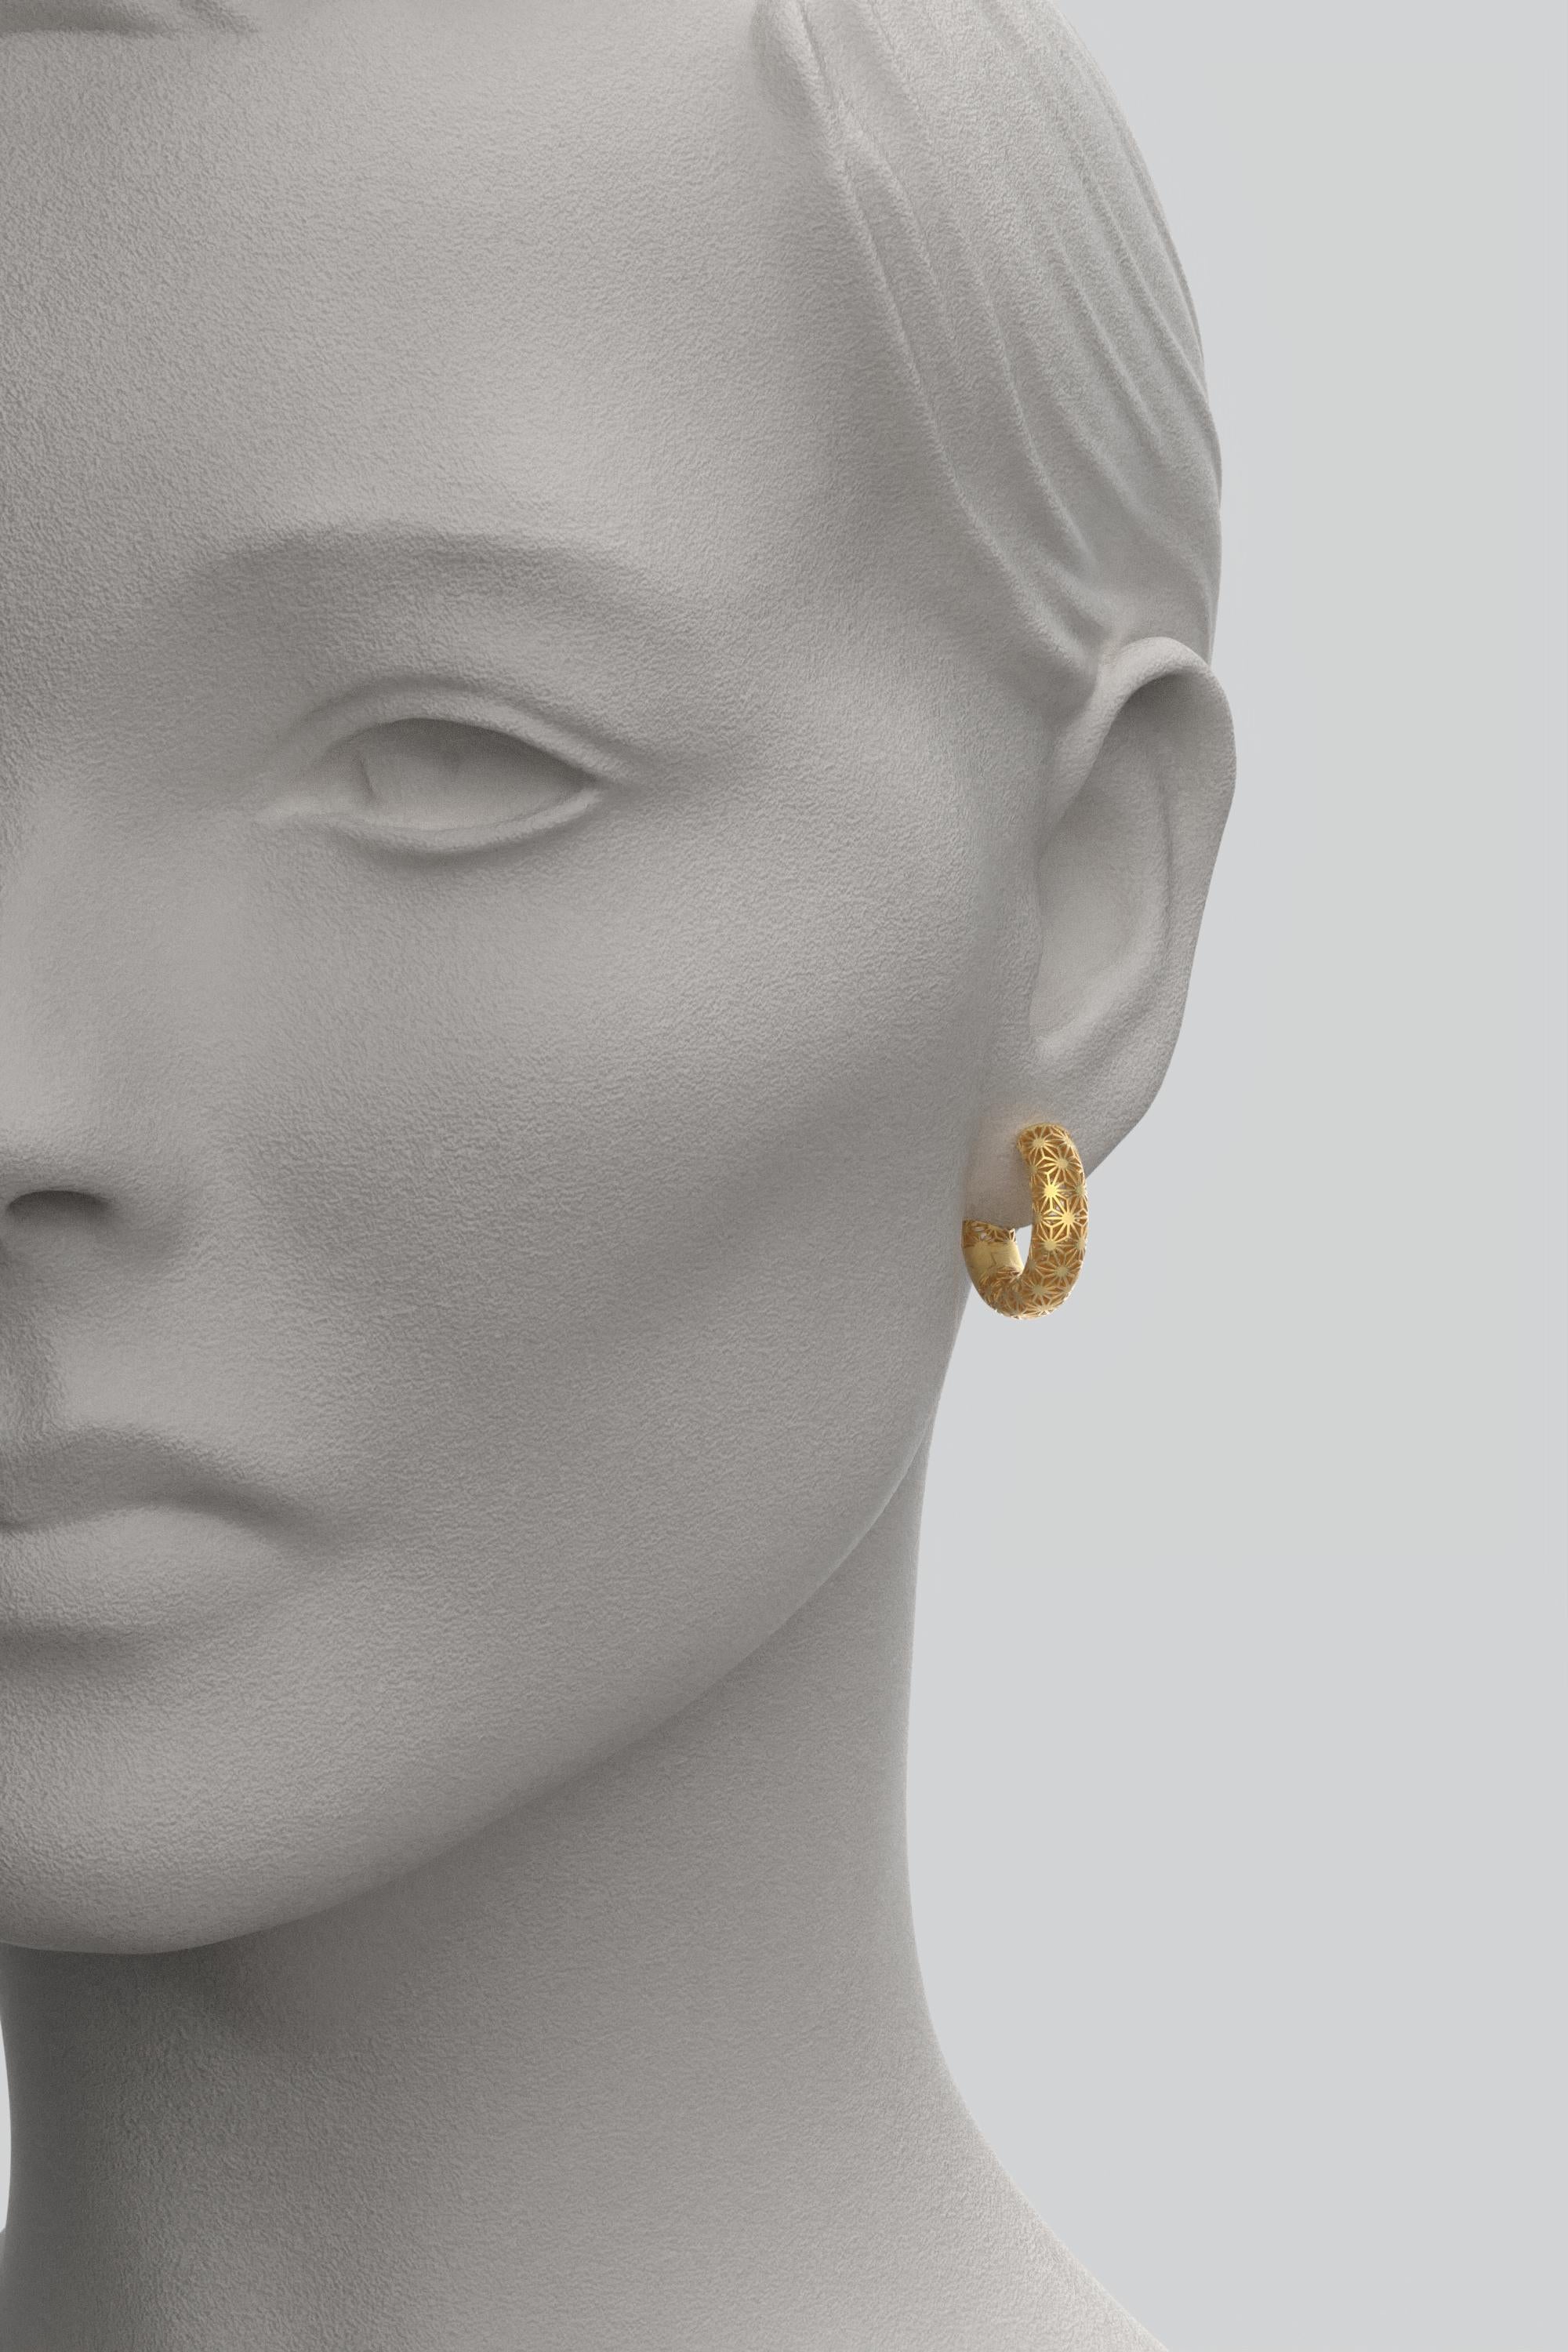 Women's  Oltremare Gioielli 18K Italian Gold Hoop Earrings - Sashiko Japanese Pattern  For Sale